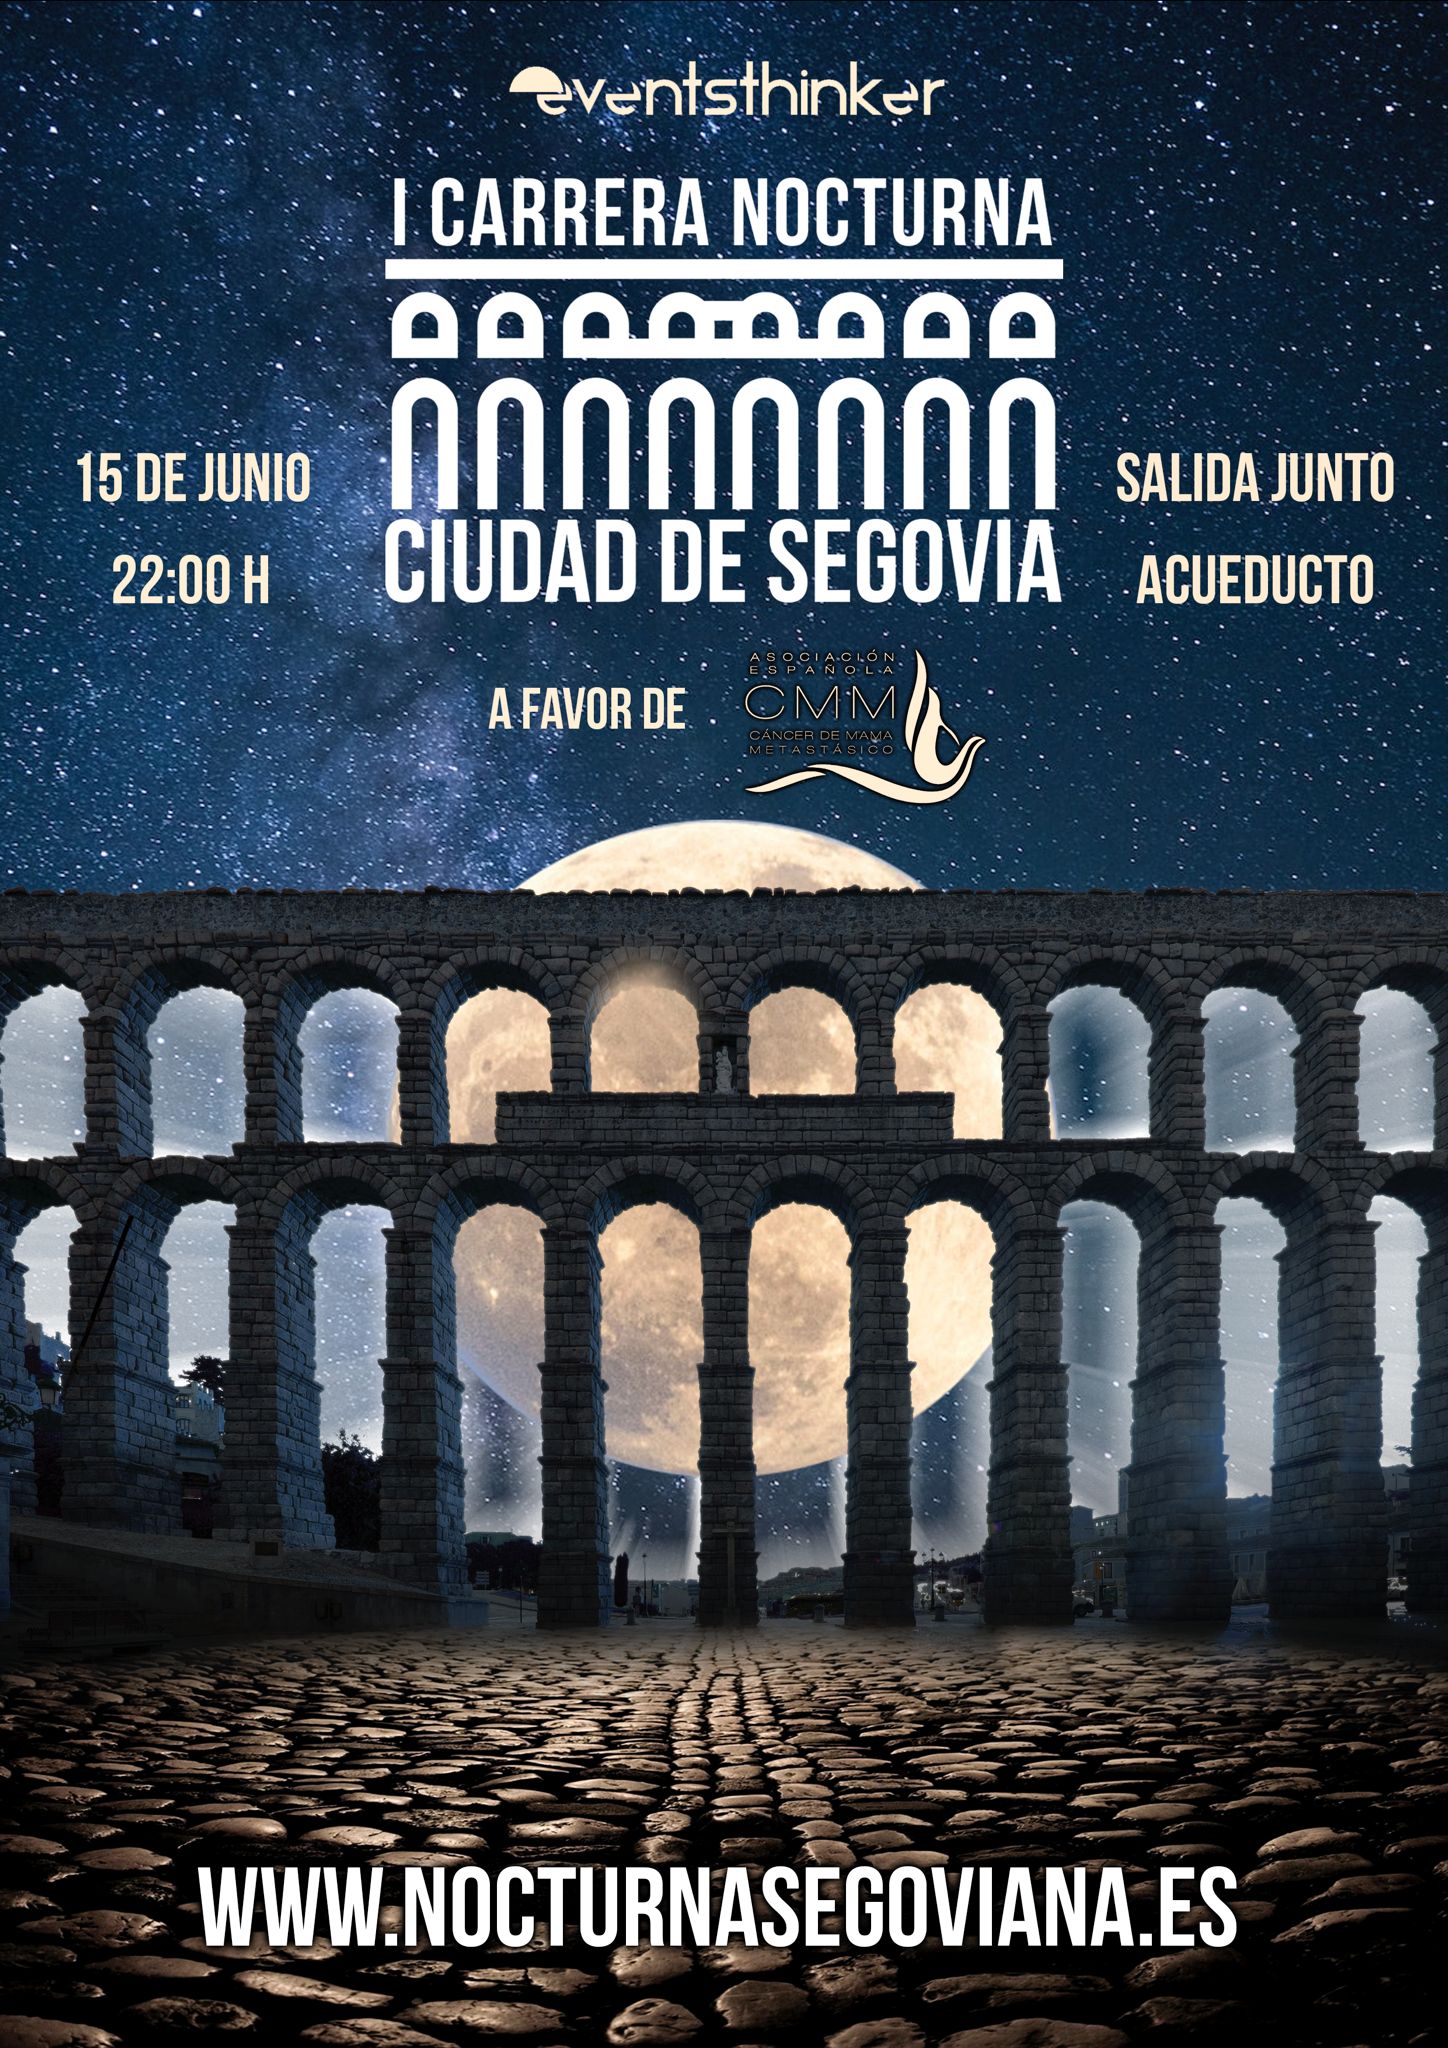 Carrera Nocturna Ciudad de Segovia